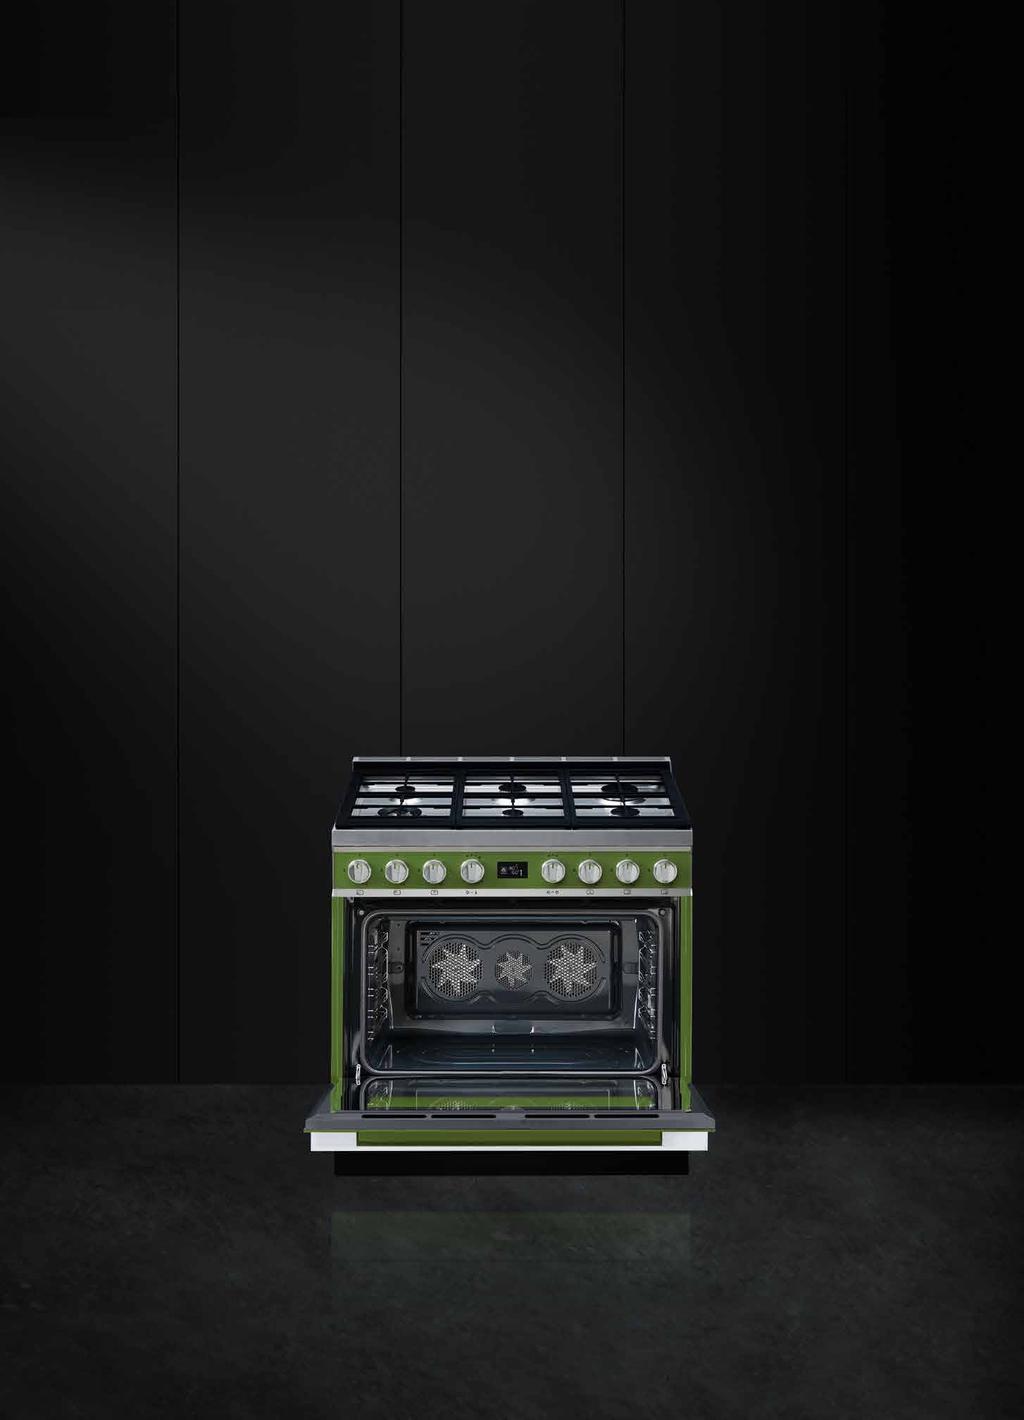 FOGÕES alta performance A Smeg cria fogões que combinam design e tecnologia num estilo único, onde é dada especial atenção à funcionalidade.